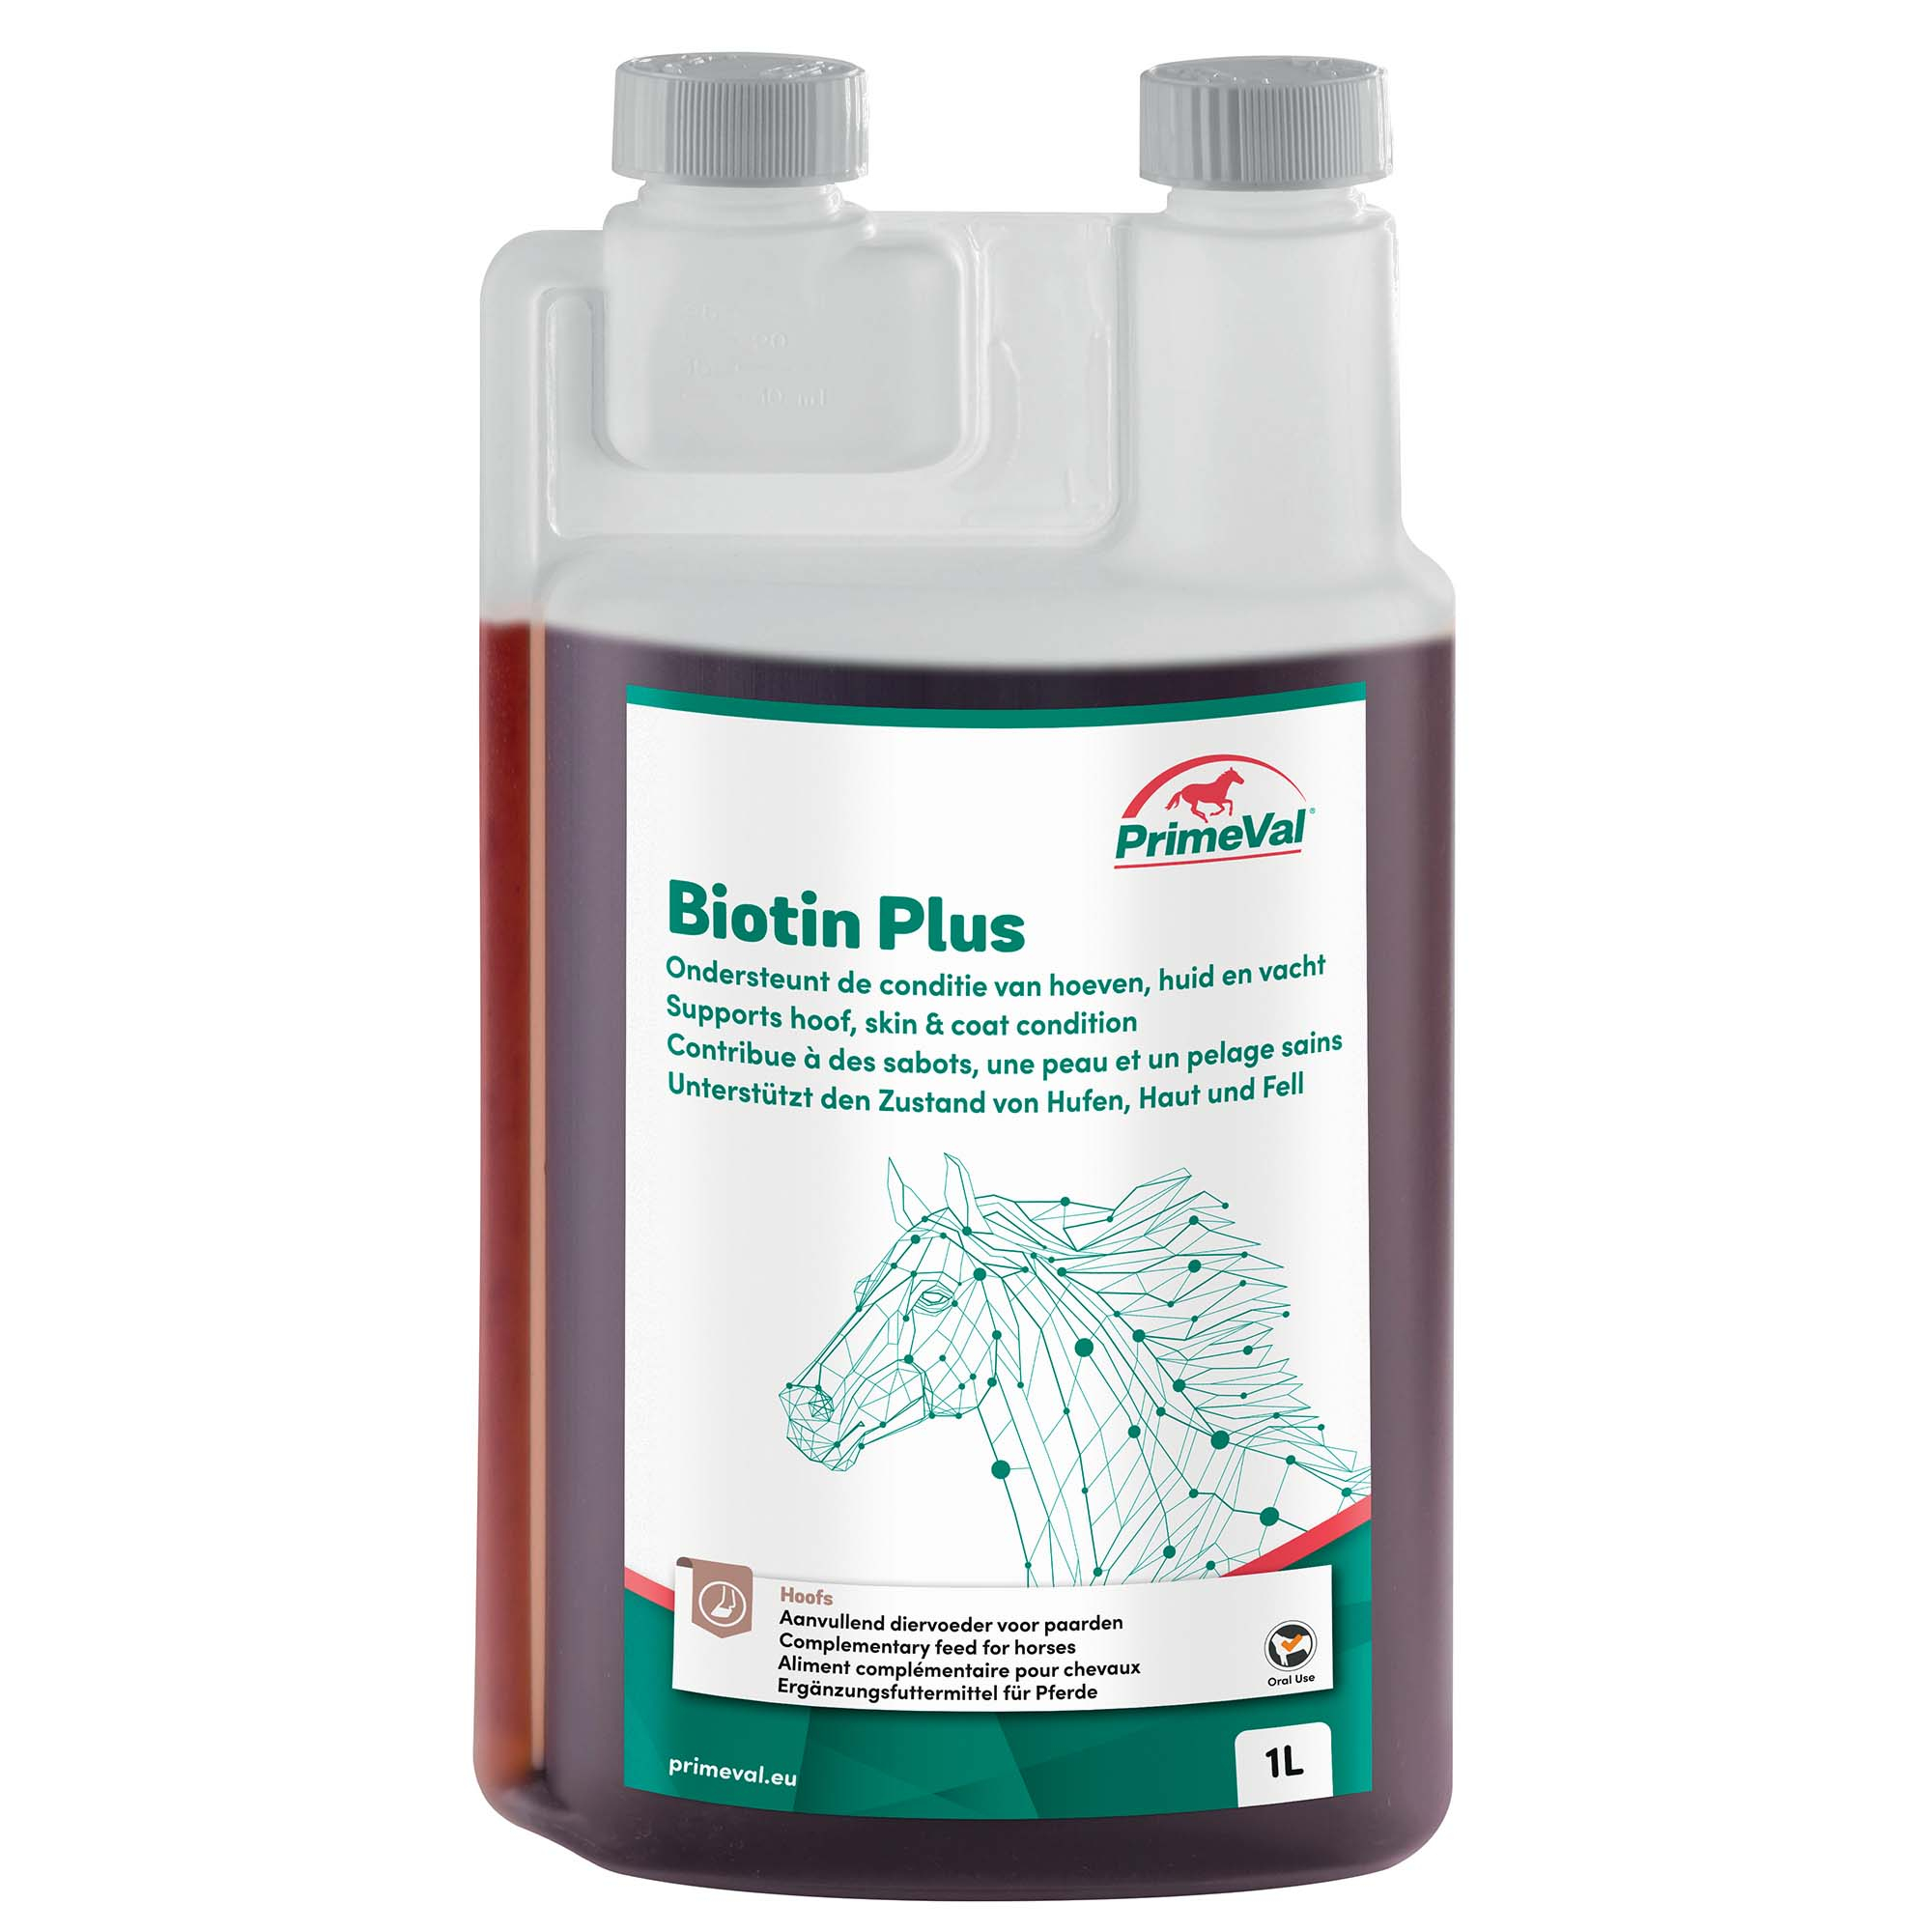 PrimeVal Biotin Plus è un integratore alimentare per gli zoccoli, la pelle e il mantello dei cavalli.